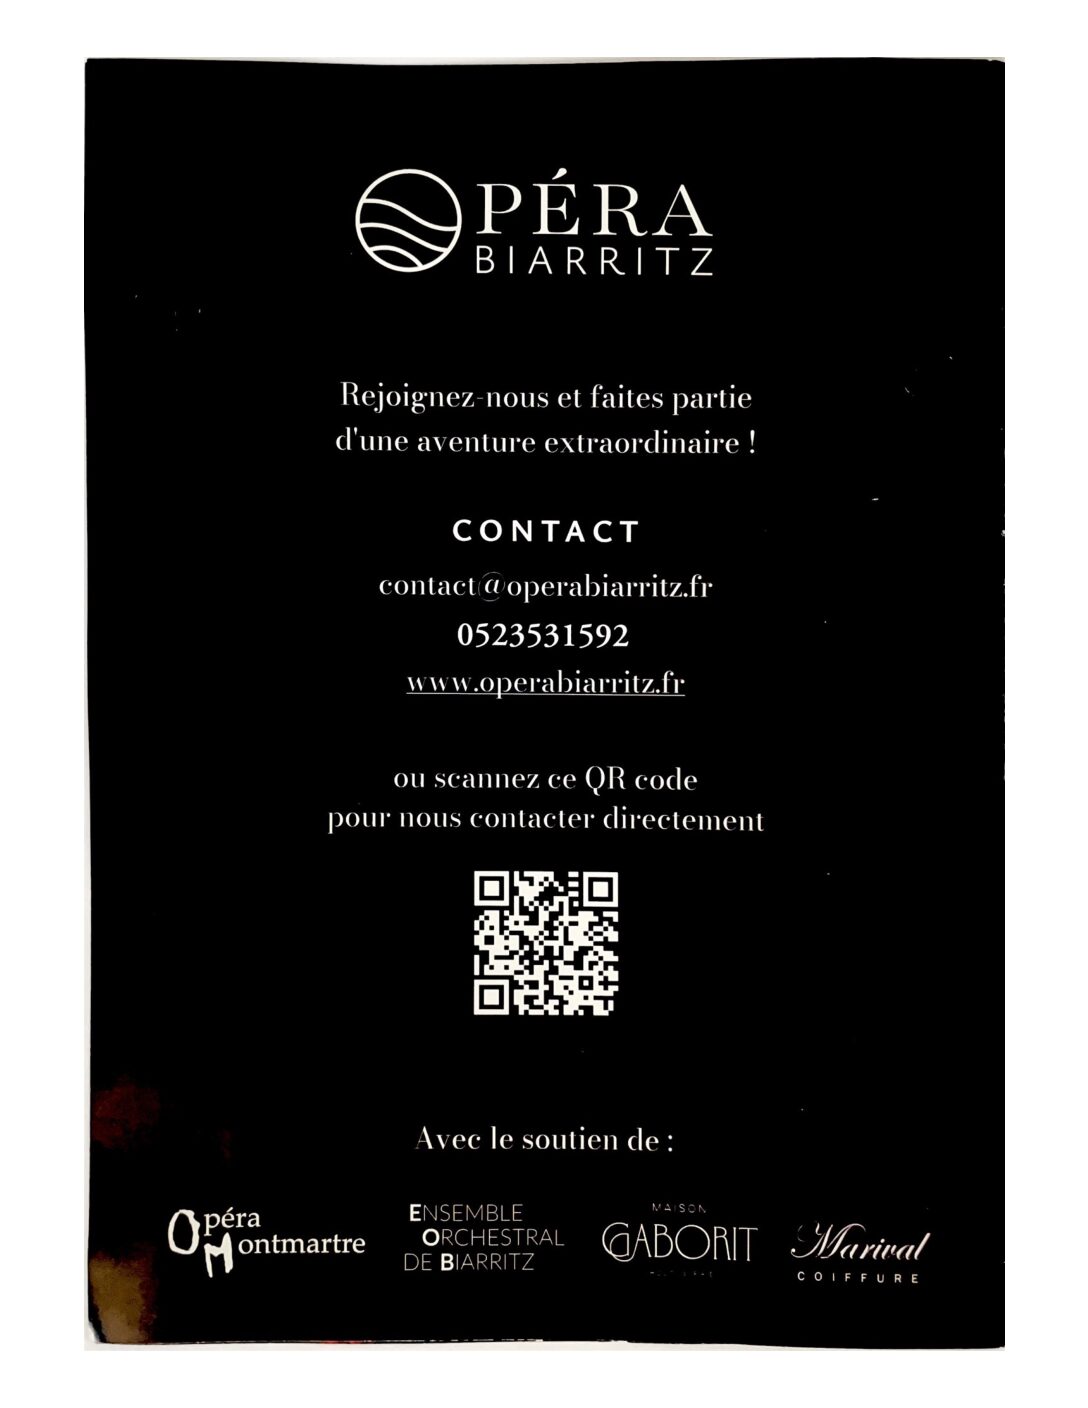 Création d’une compagnie d’opéra